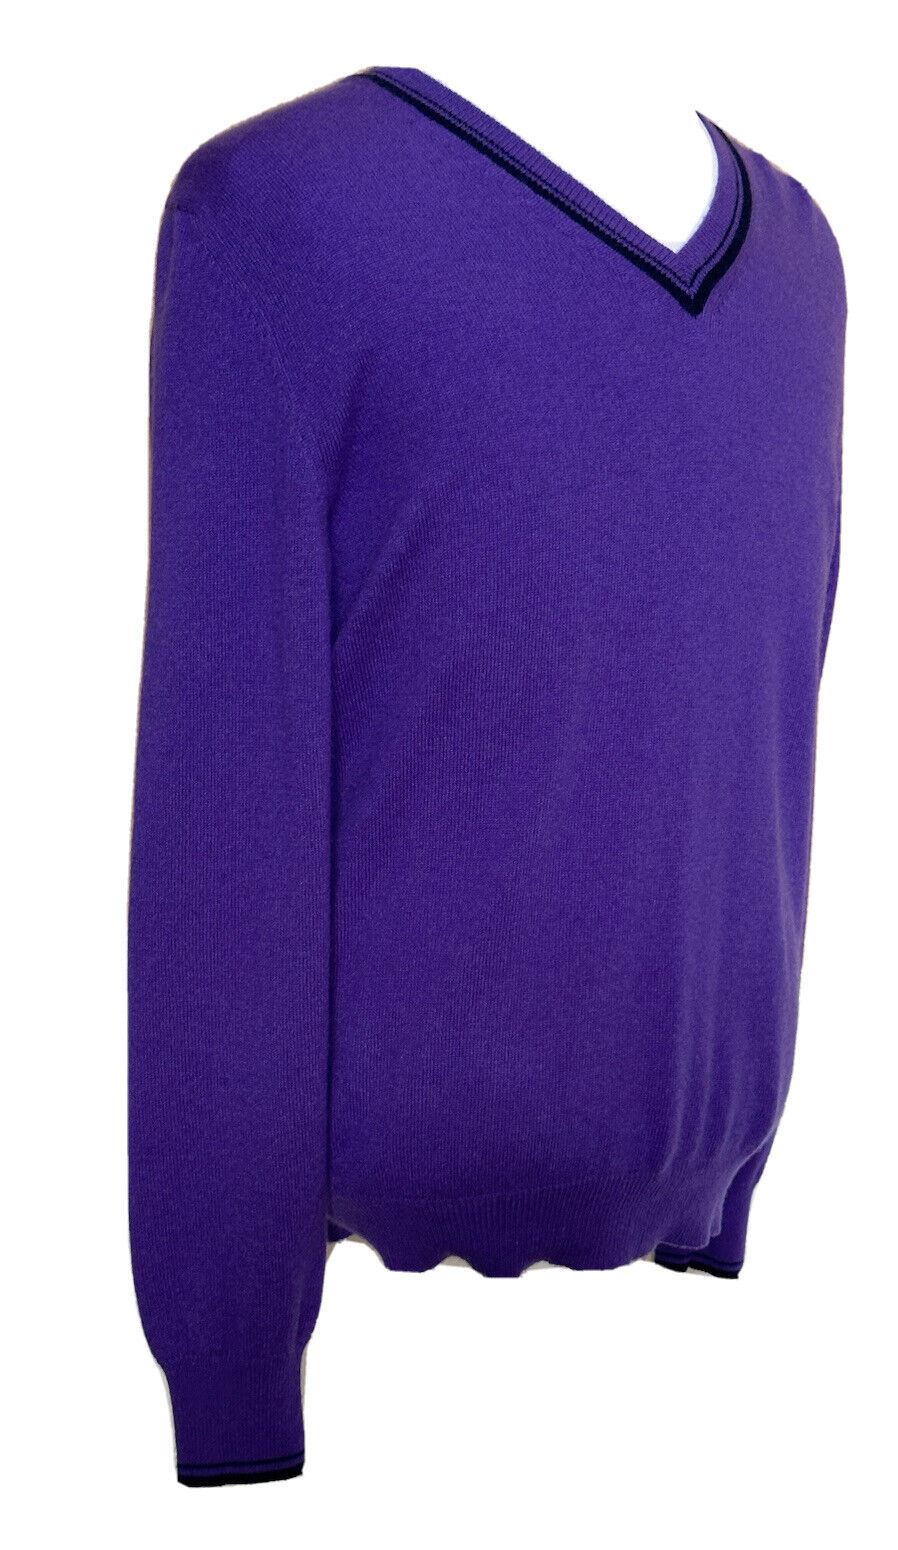 ETRO Herren-Pullover mit V-Ausschnitt, weich, lila, Größe M